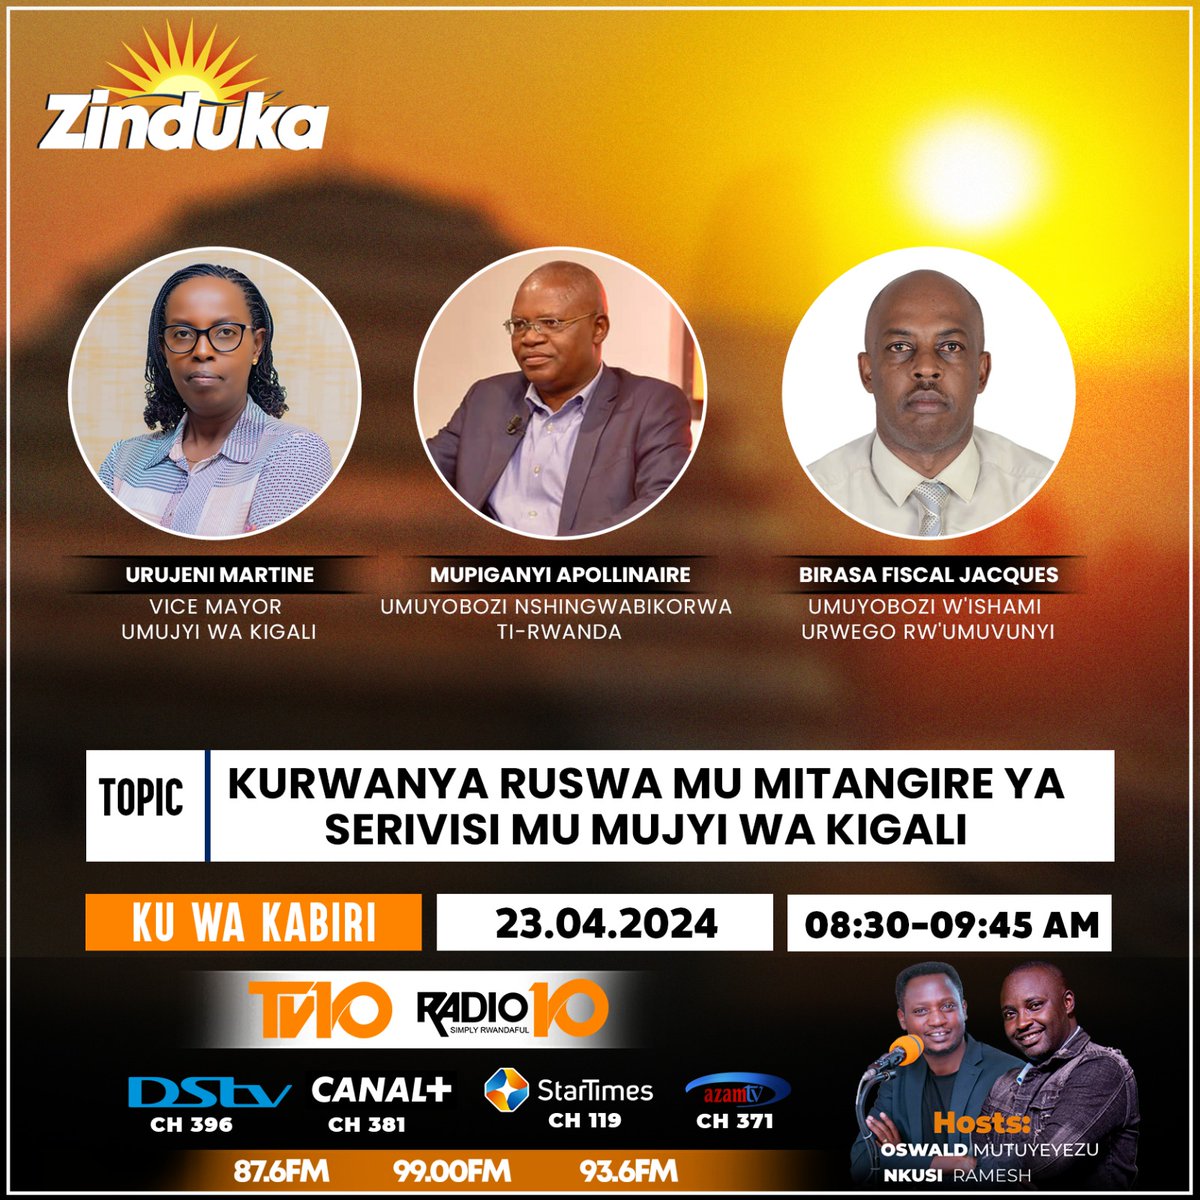 Turabararikira ikiganiro #Zinduka cyo kuri uyu wa Kabiri tariki ya 23/04/2024 @Radiotv10rwanda guhera 08H30. Kizibanda ku ngamba zo gukumira no kurwanya ruswa mu mitangire ya serivisi mu Mujyi wa #Kigali.